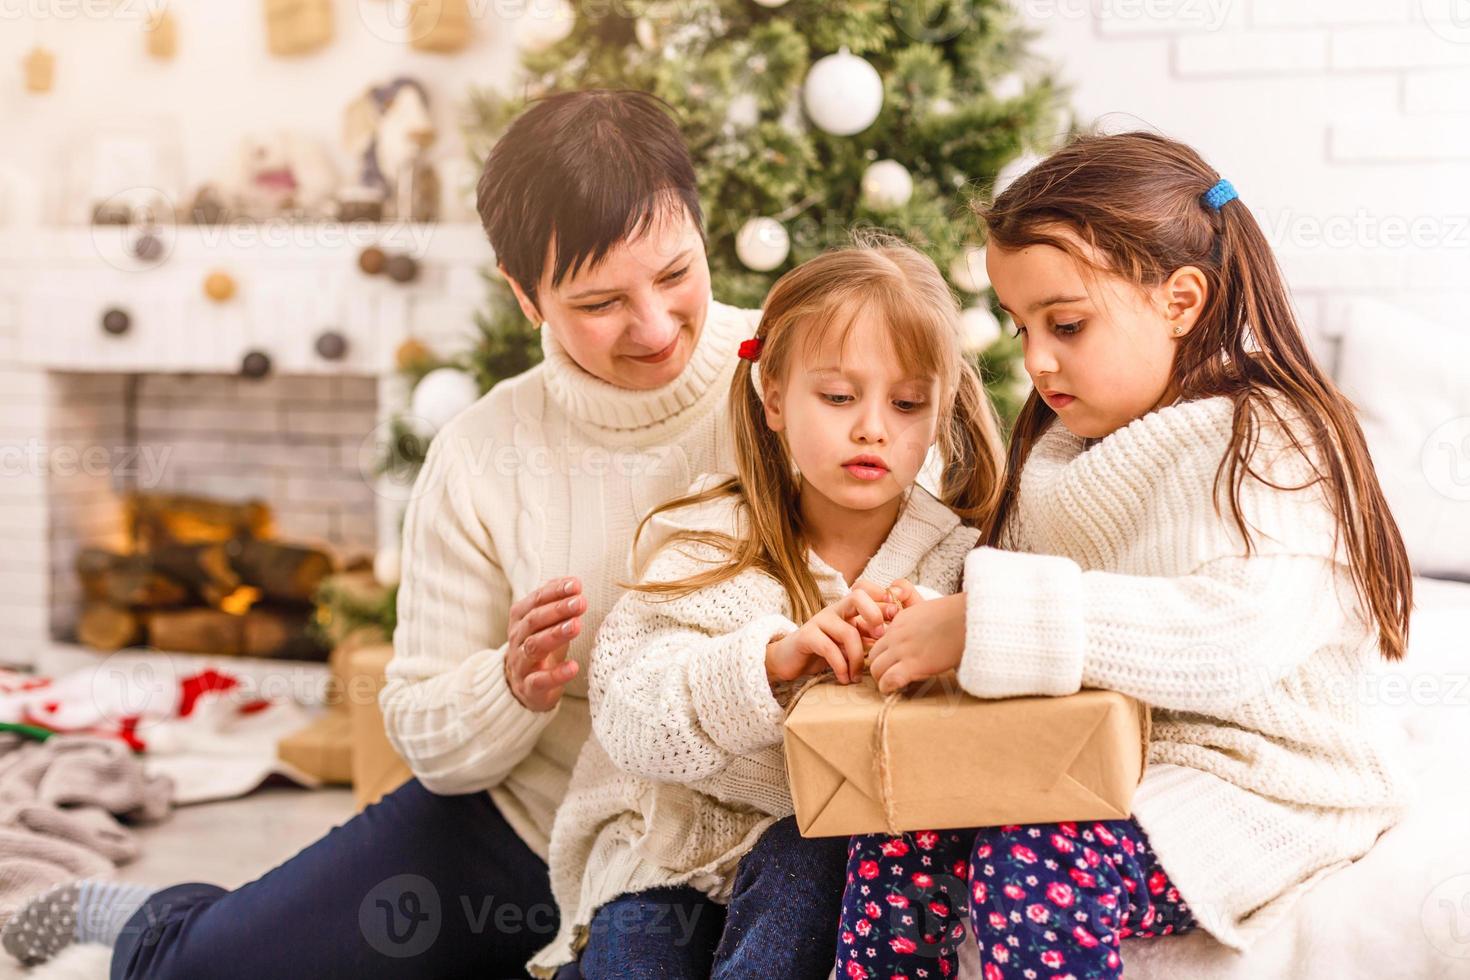 las hermanas pequeñas de los niños sostienen el fondo interior de las cajas de regalos. que gran sorpresa pequeñas niñas lindas recibieron regalos navideños. mejores juguetes y regalos de navidad. niños amigos emocionados desempacando sus regalos. foto